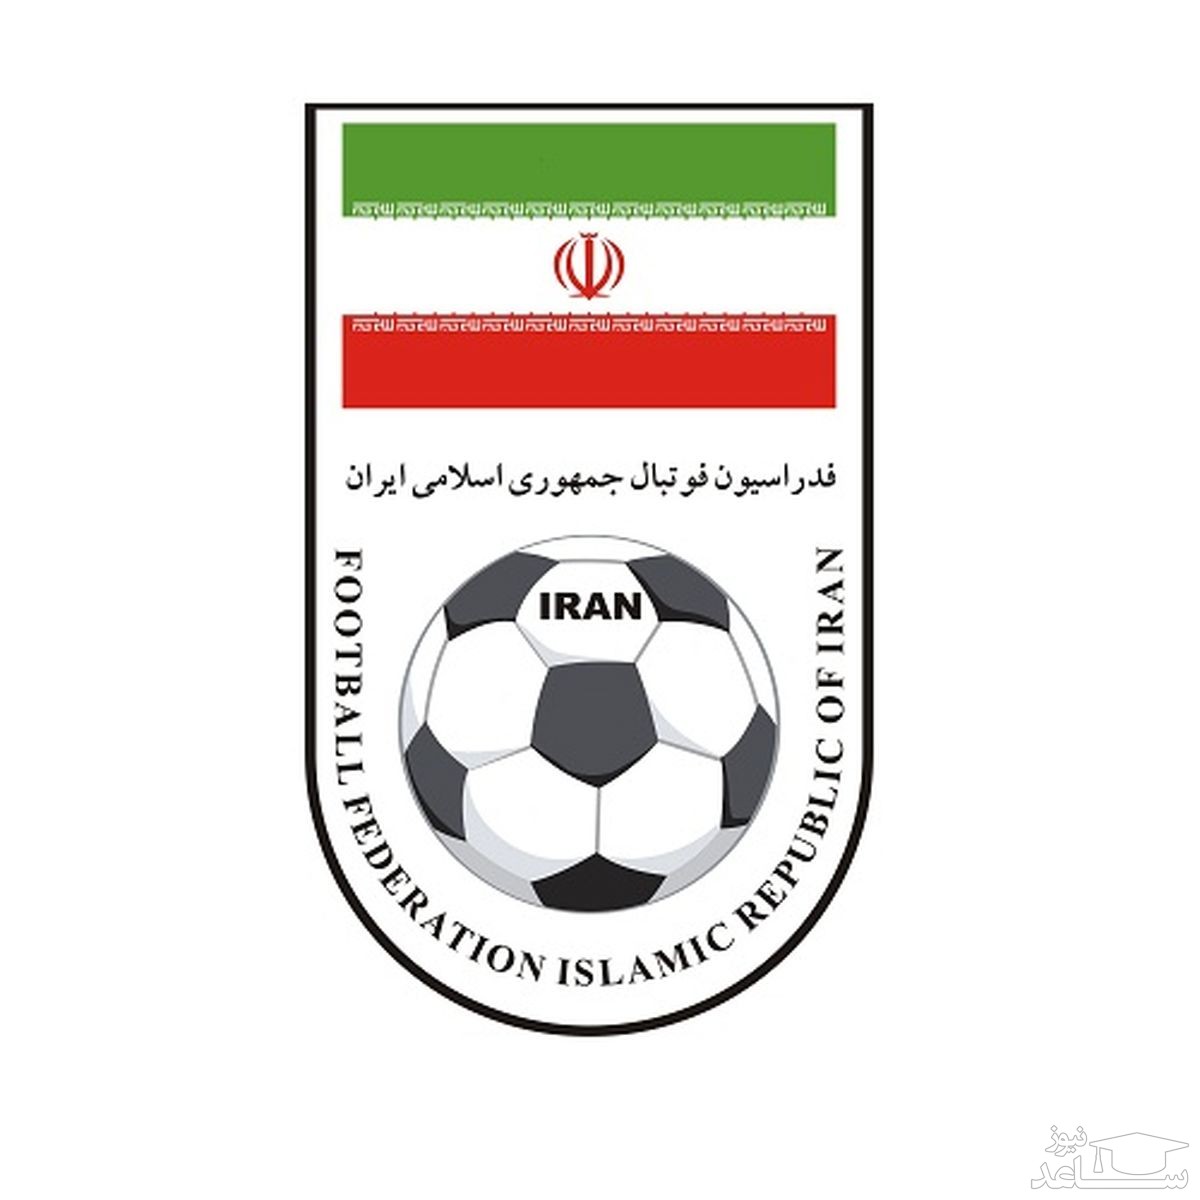 زیباترین متن های مخصوص هواداران تیم ملی ایران